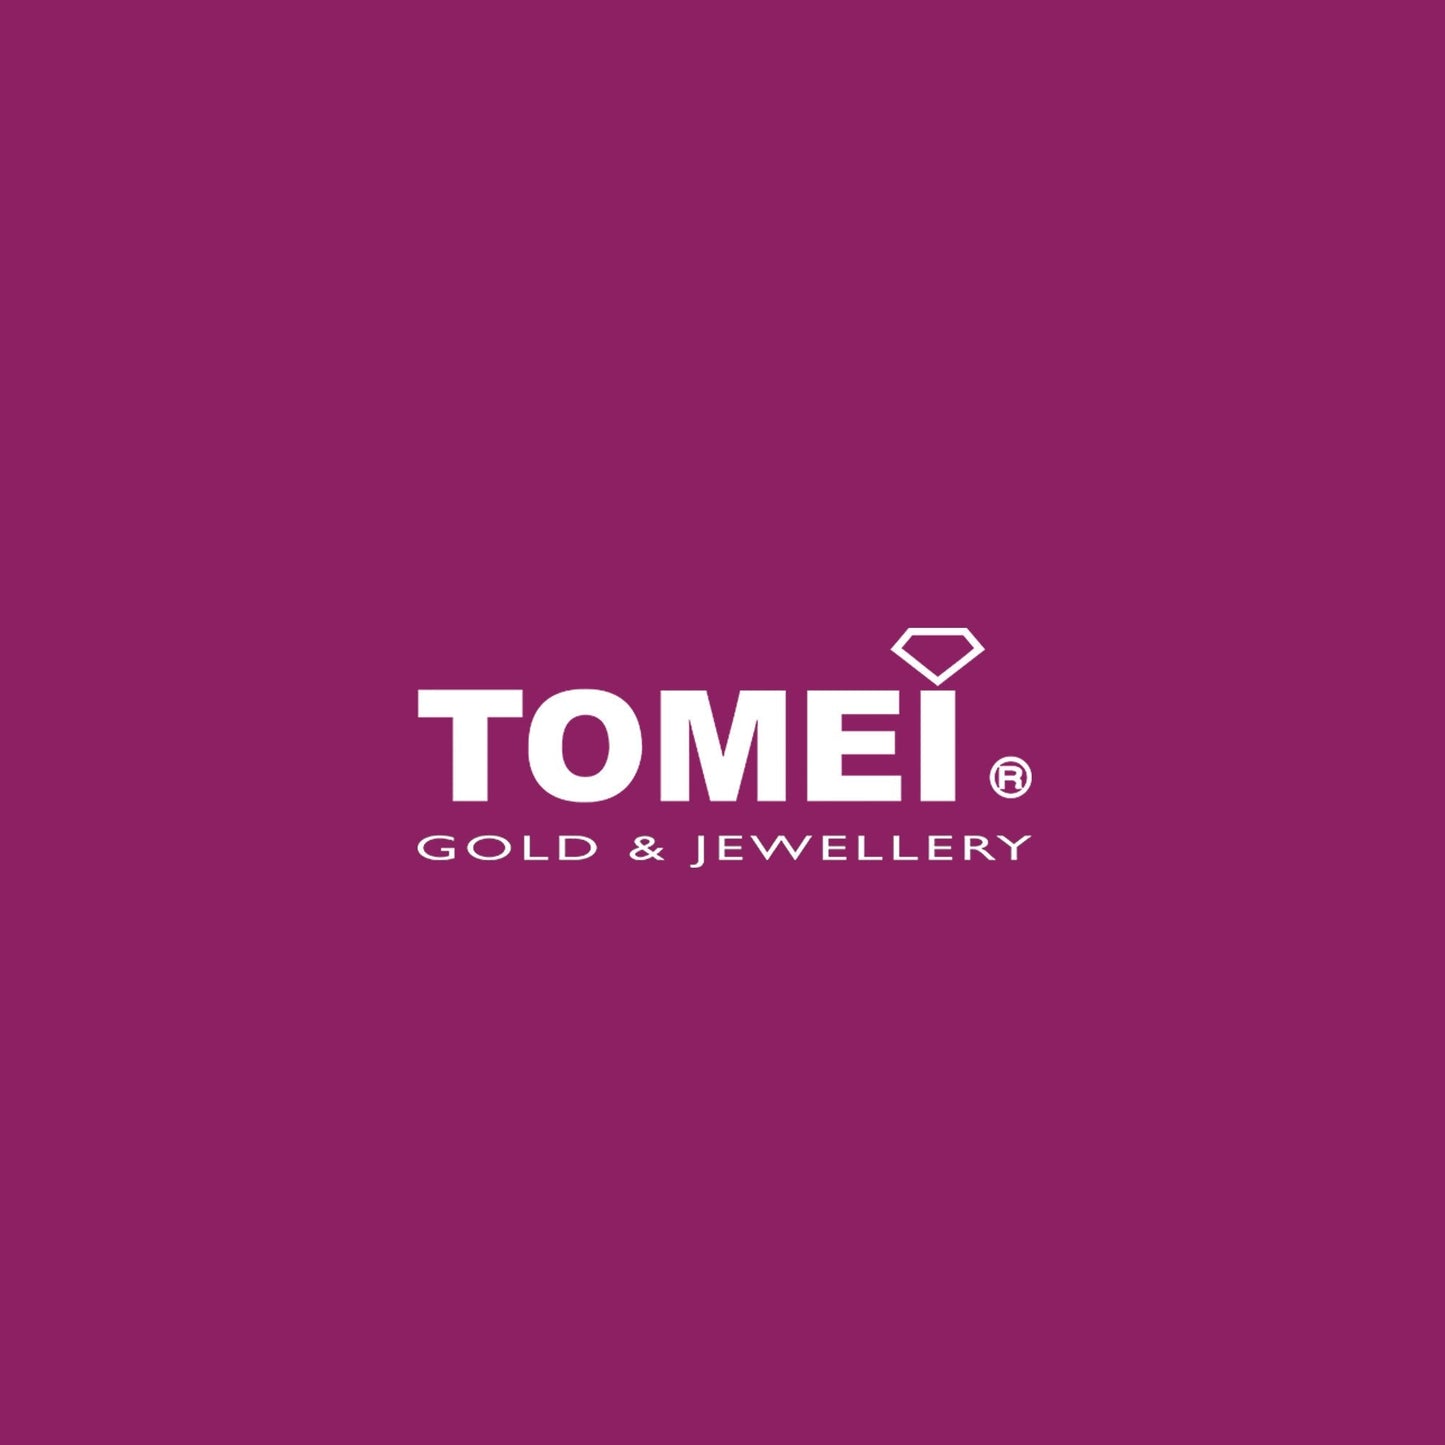 TOMEI  Dangling Charm Of Fu, Yellow Gold 916